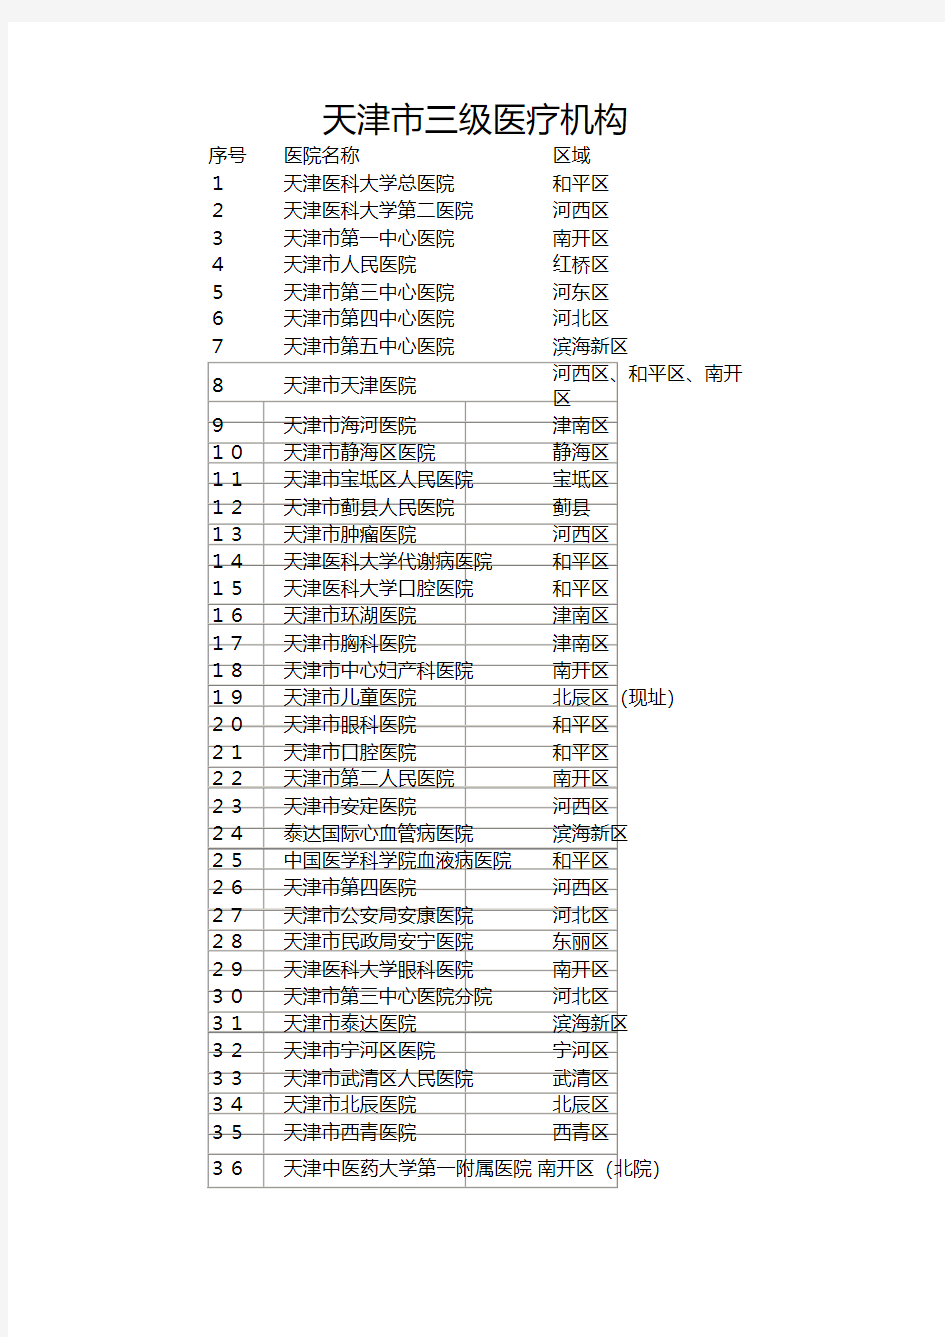 2016天津市三级甲等医院名单